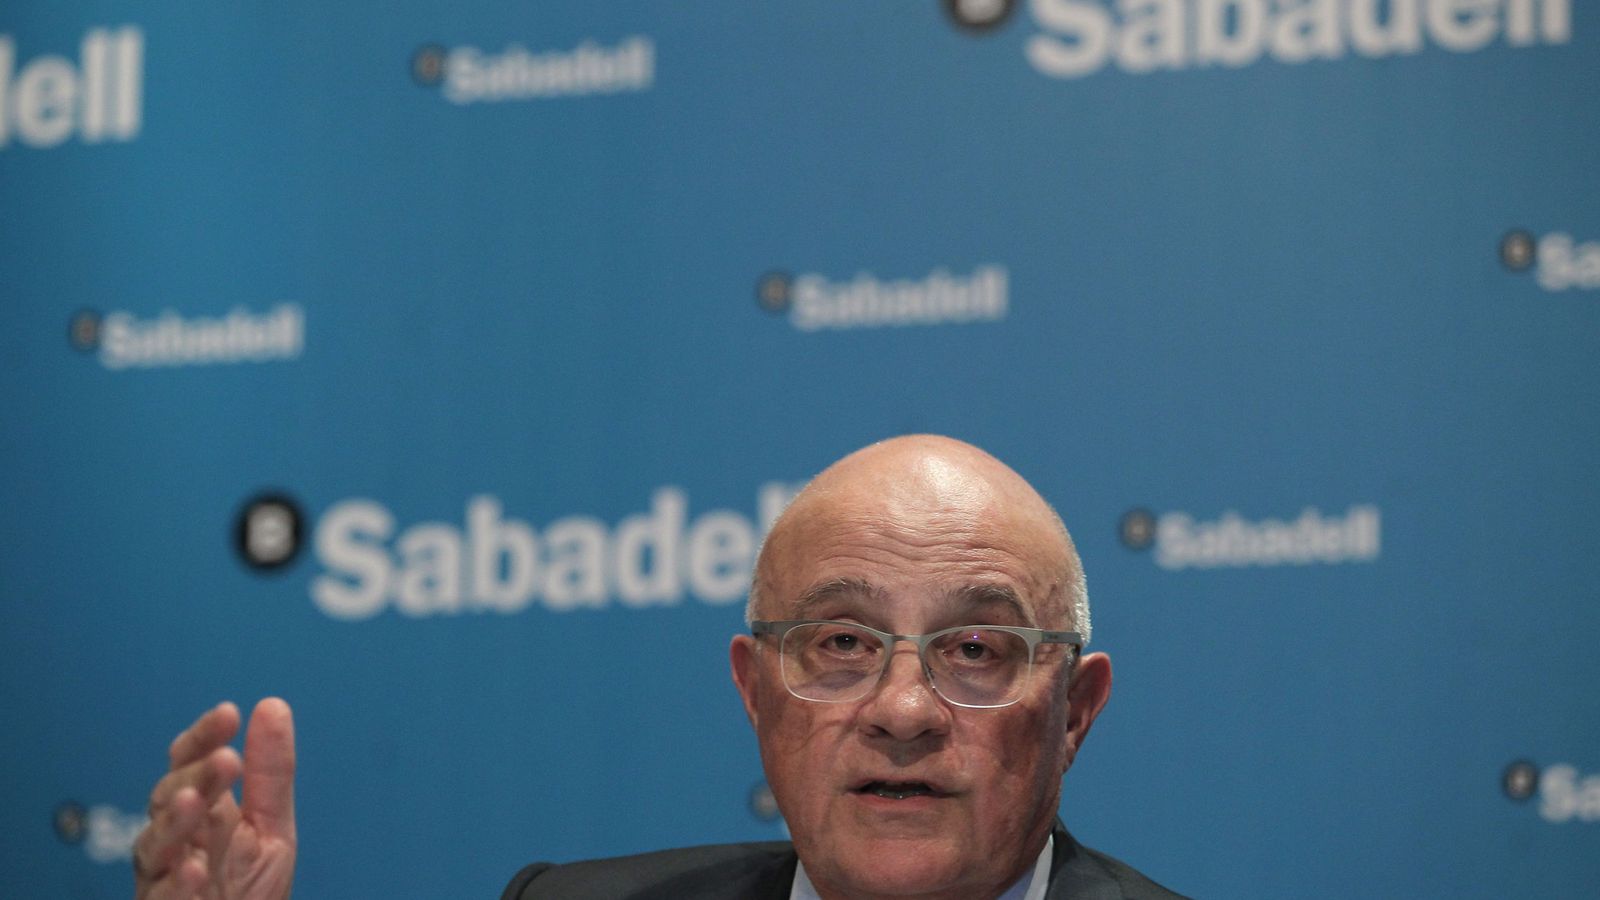 Foto: El presidente del Banco Sabadell, Josep Oliu Creus, en una fototografía de archivo. (Efe) 